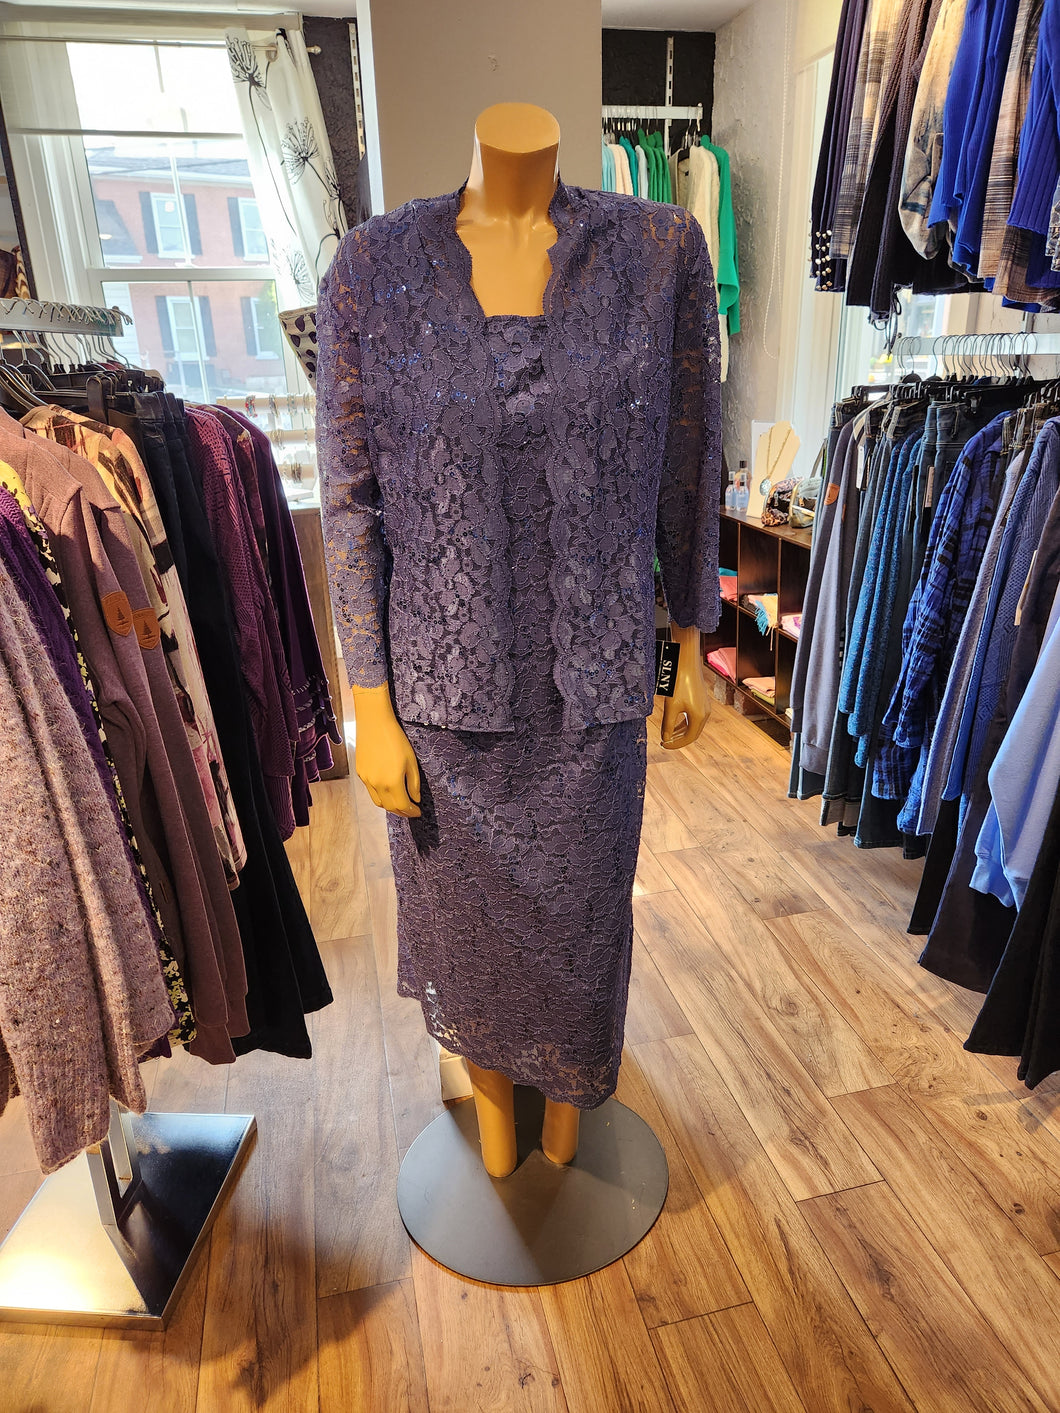 SLNY Wedgewood Laced & Sequinned Sleeveless Dress with Matching 3/4 Sleeve Jacket